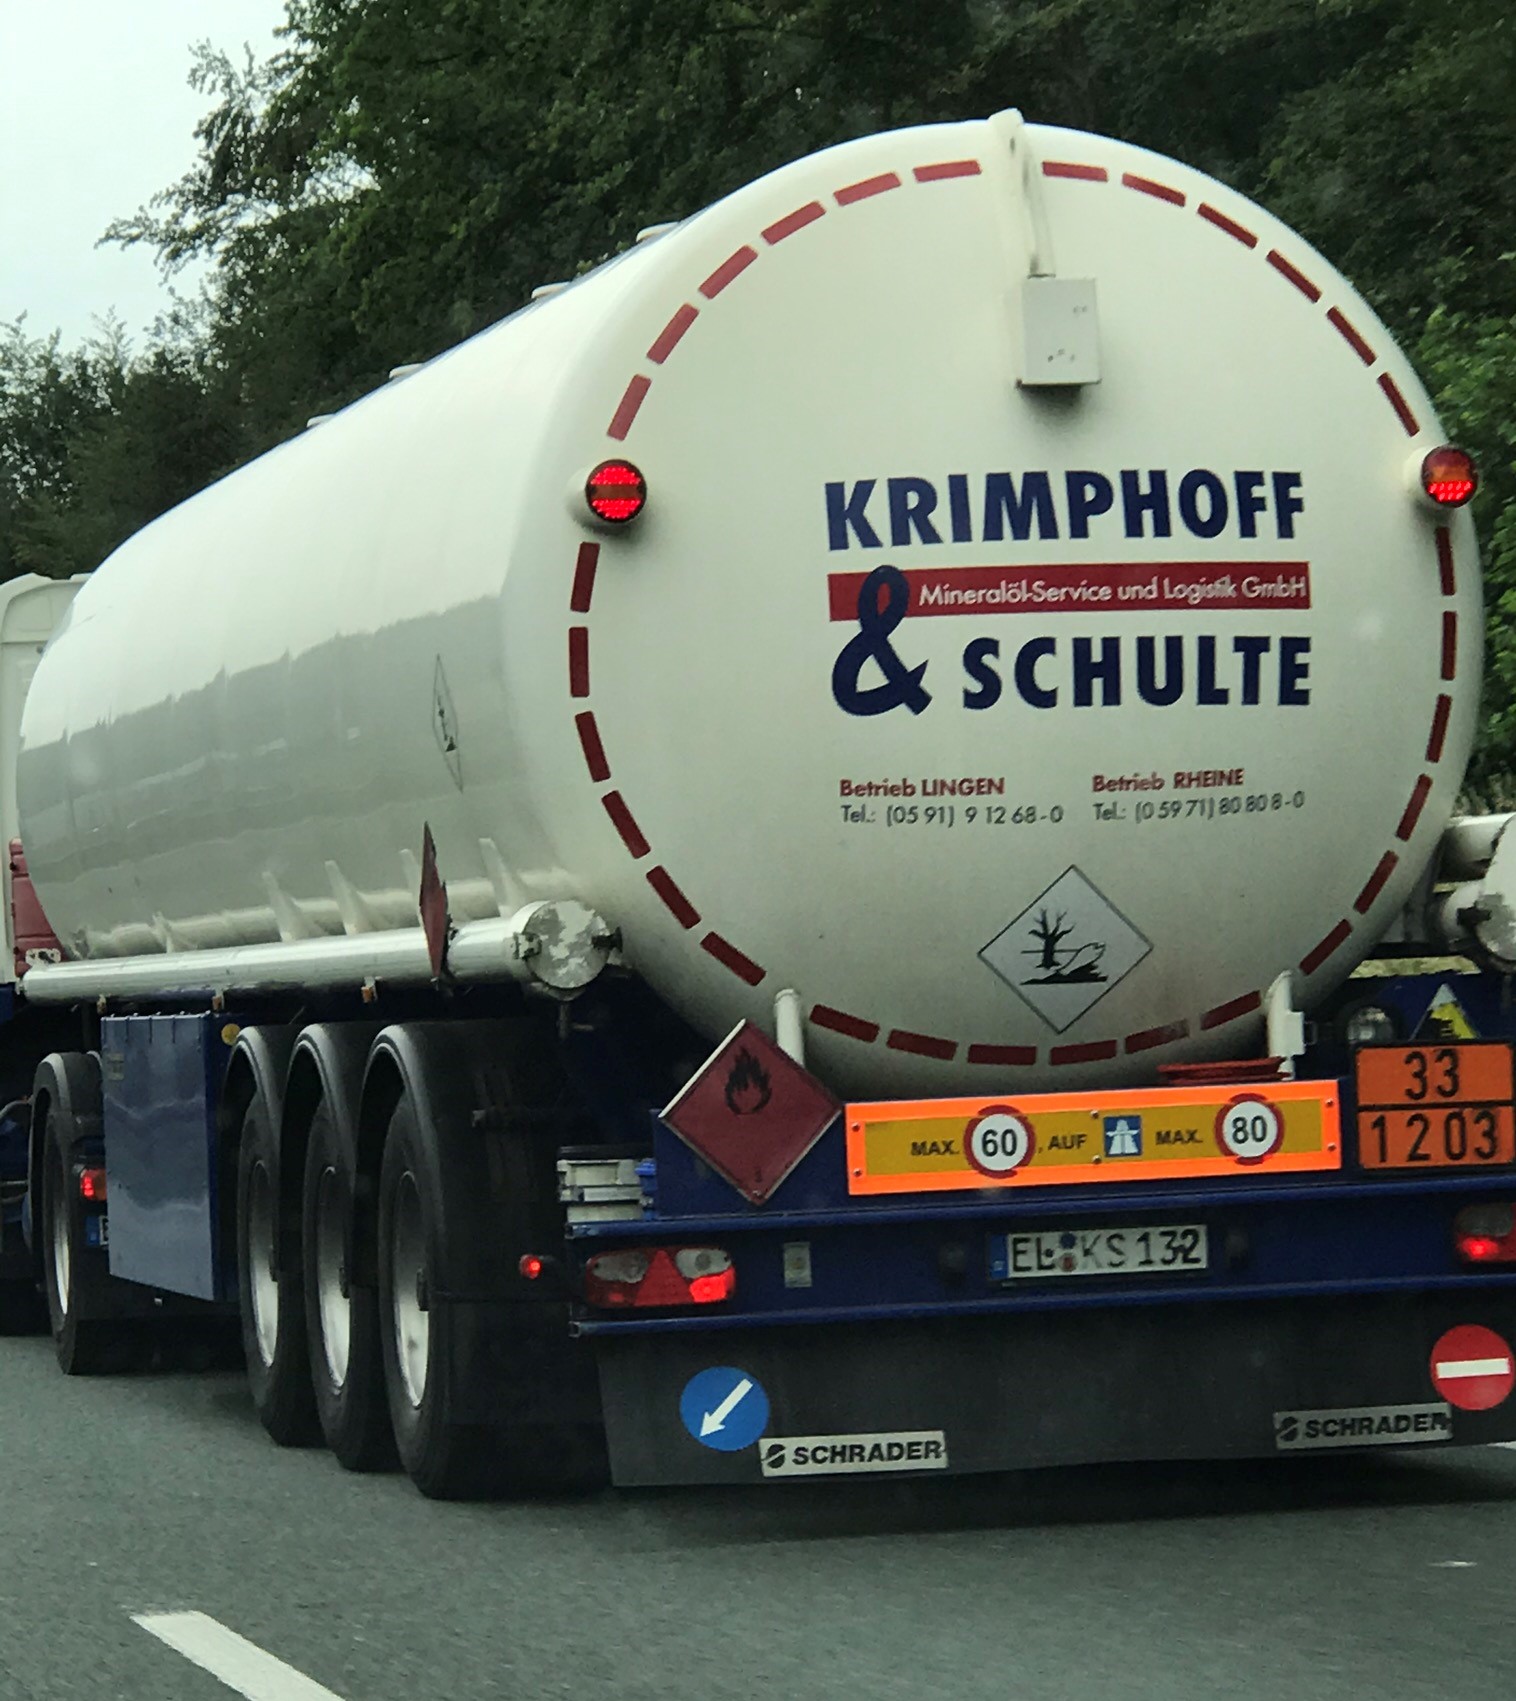 Bild 1 Krimphoff & Schulte Mineralölservice und Logistik GmbH in Rheine